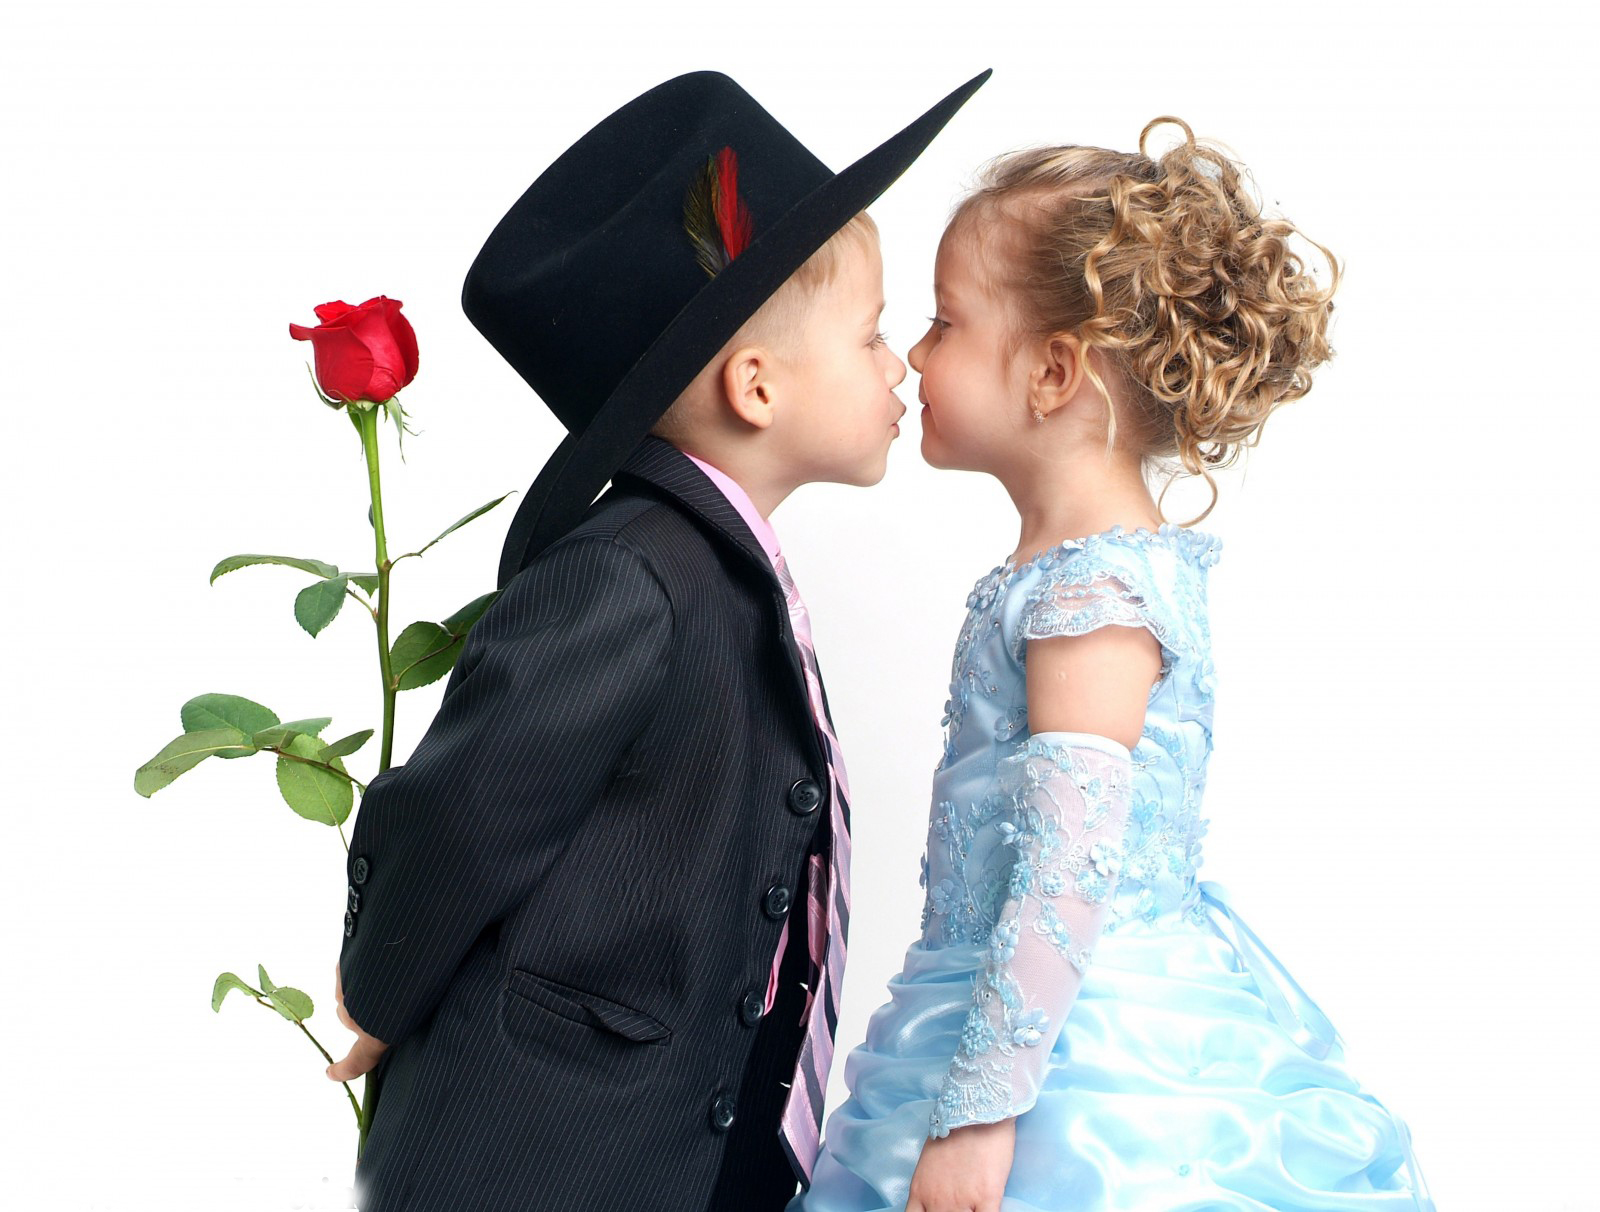 kiss wallpaper download,romance,formal wear,love,interaction,headgear